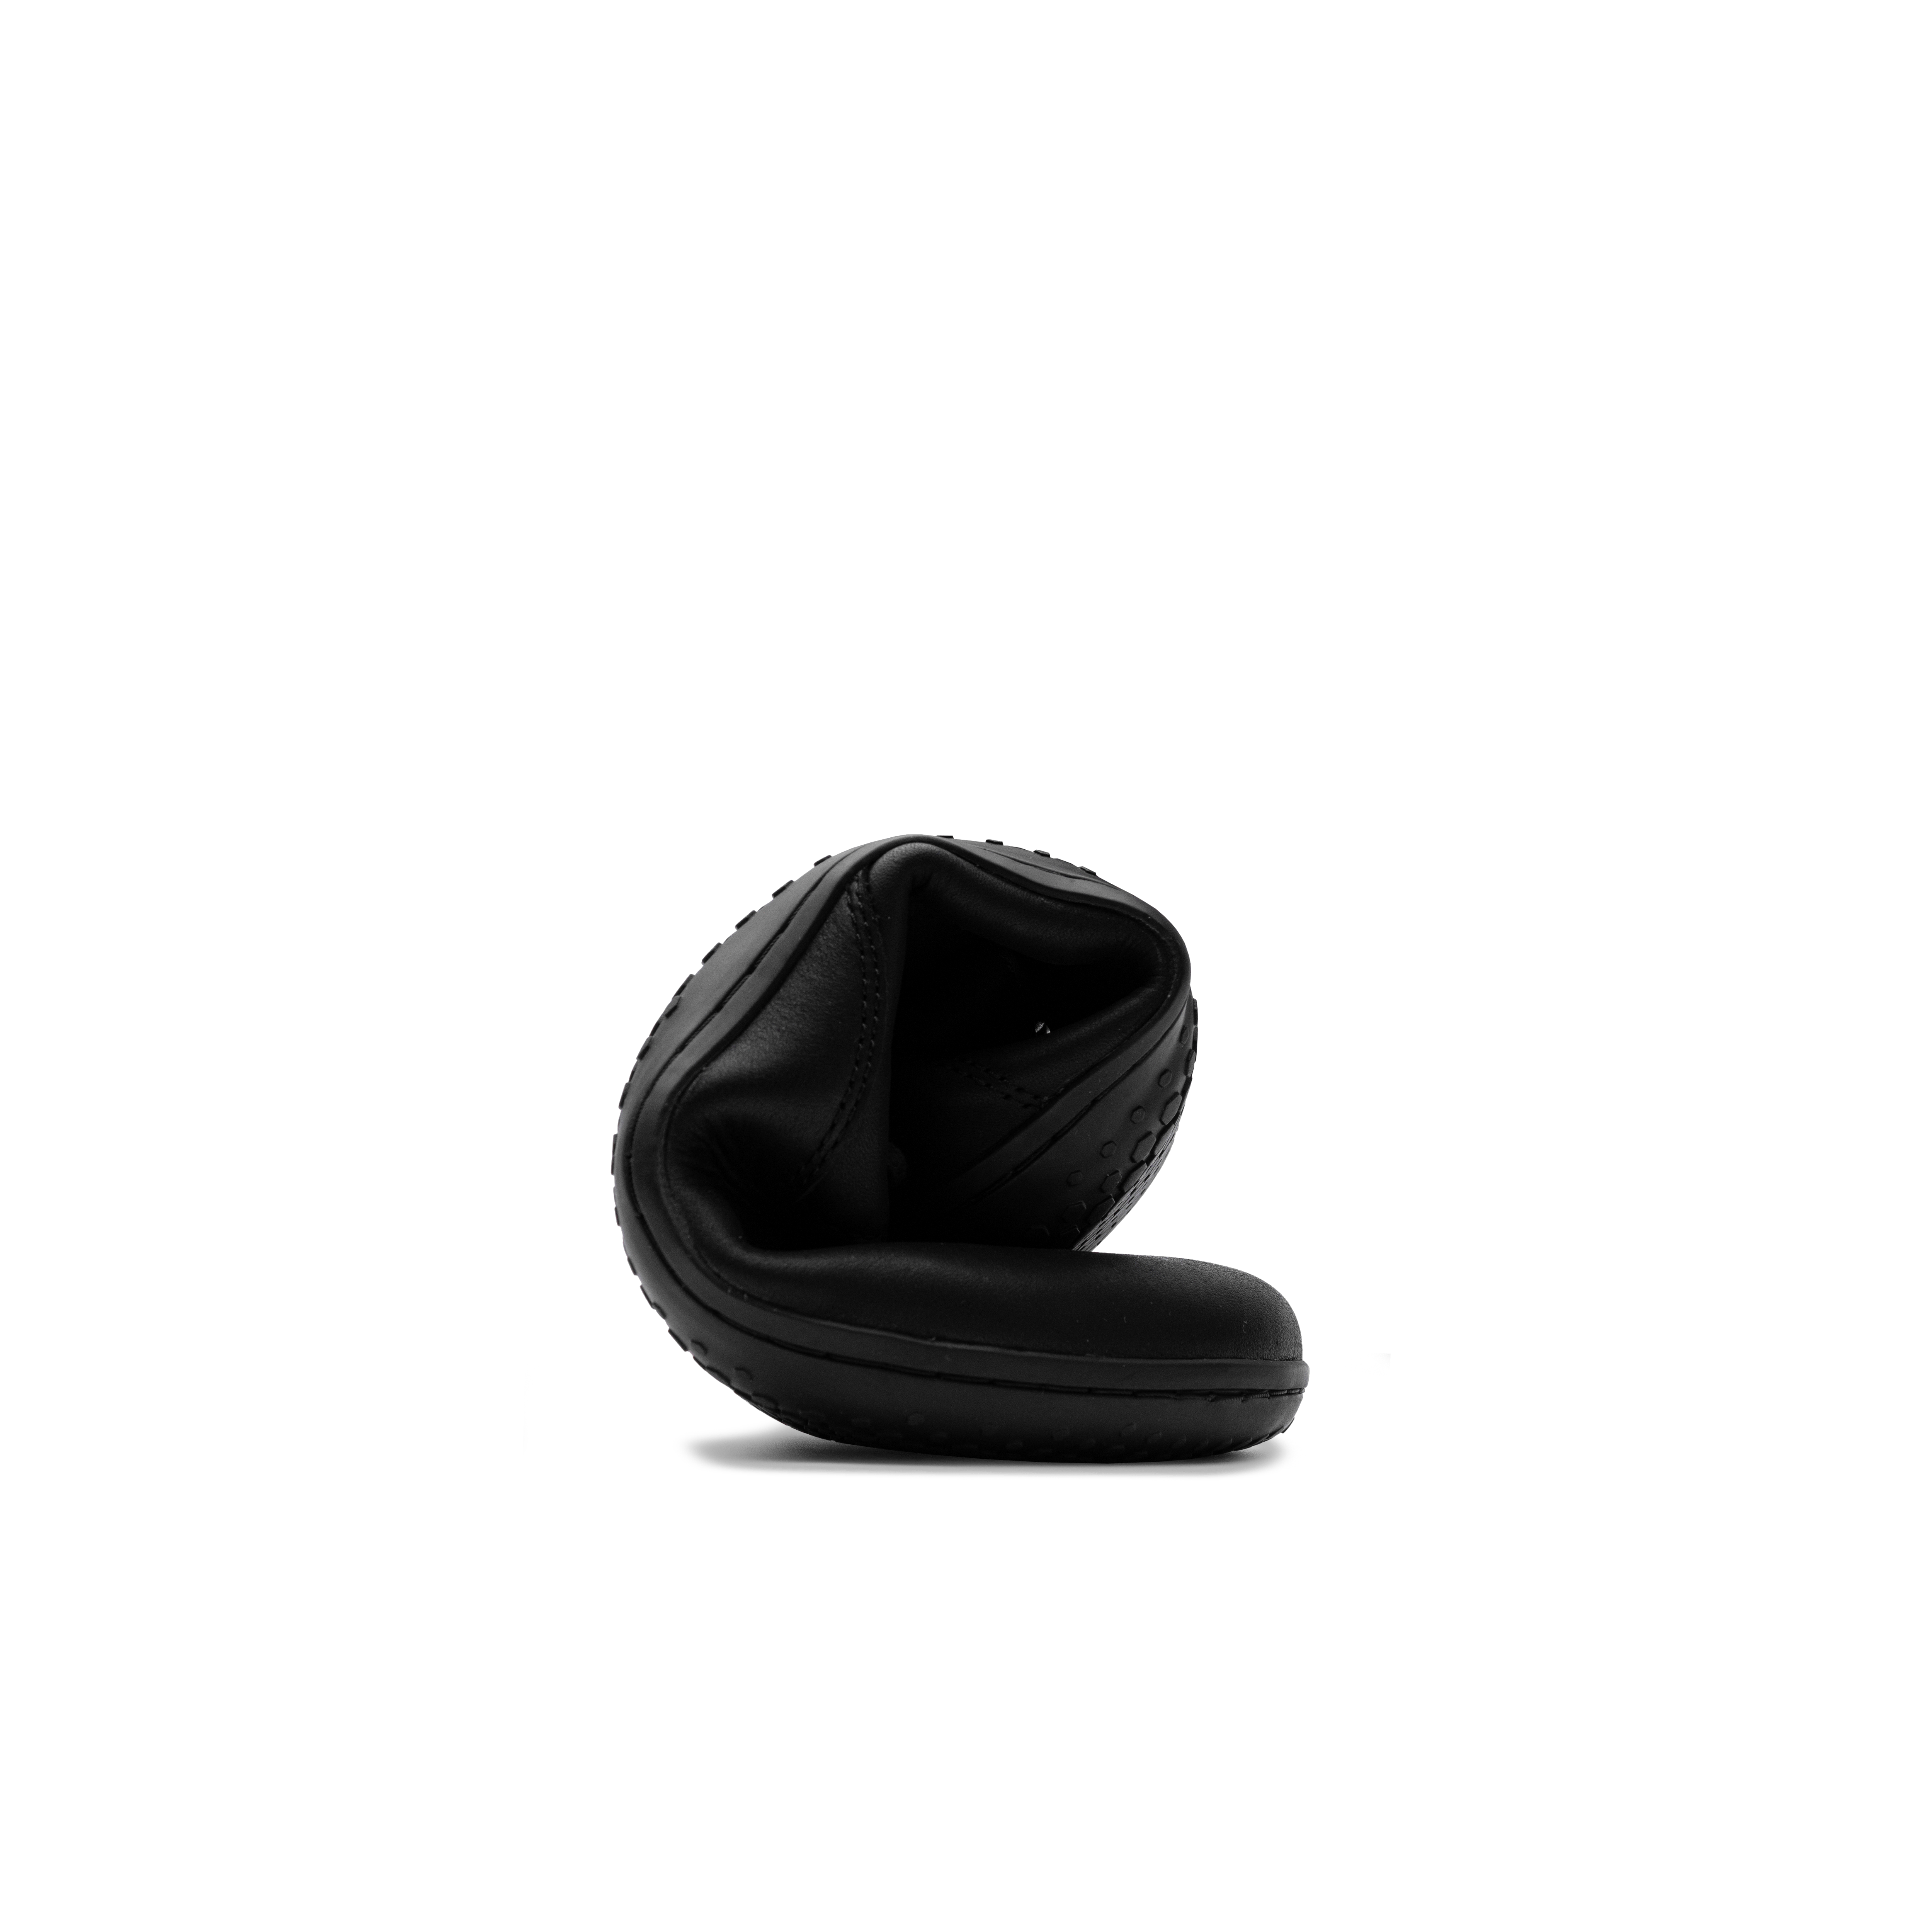 Sammenrullet Vivobarefoot Ra IV barfodssko i varianten Obsidian, fremviser en minimalistisk design og naturlig fodbevægelse, fremstillet af sort vildtlæder.